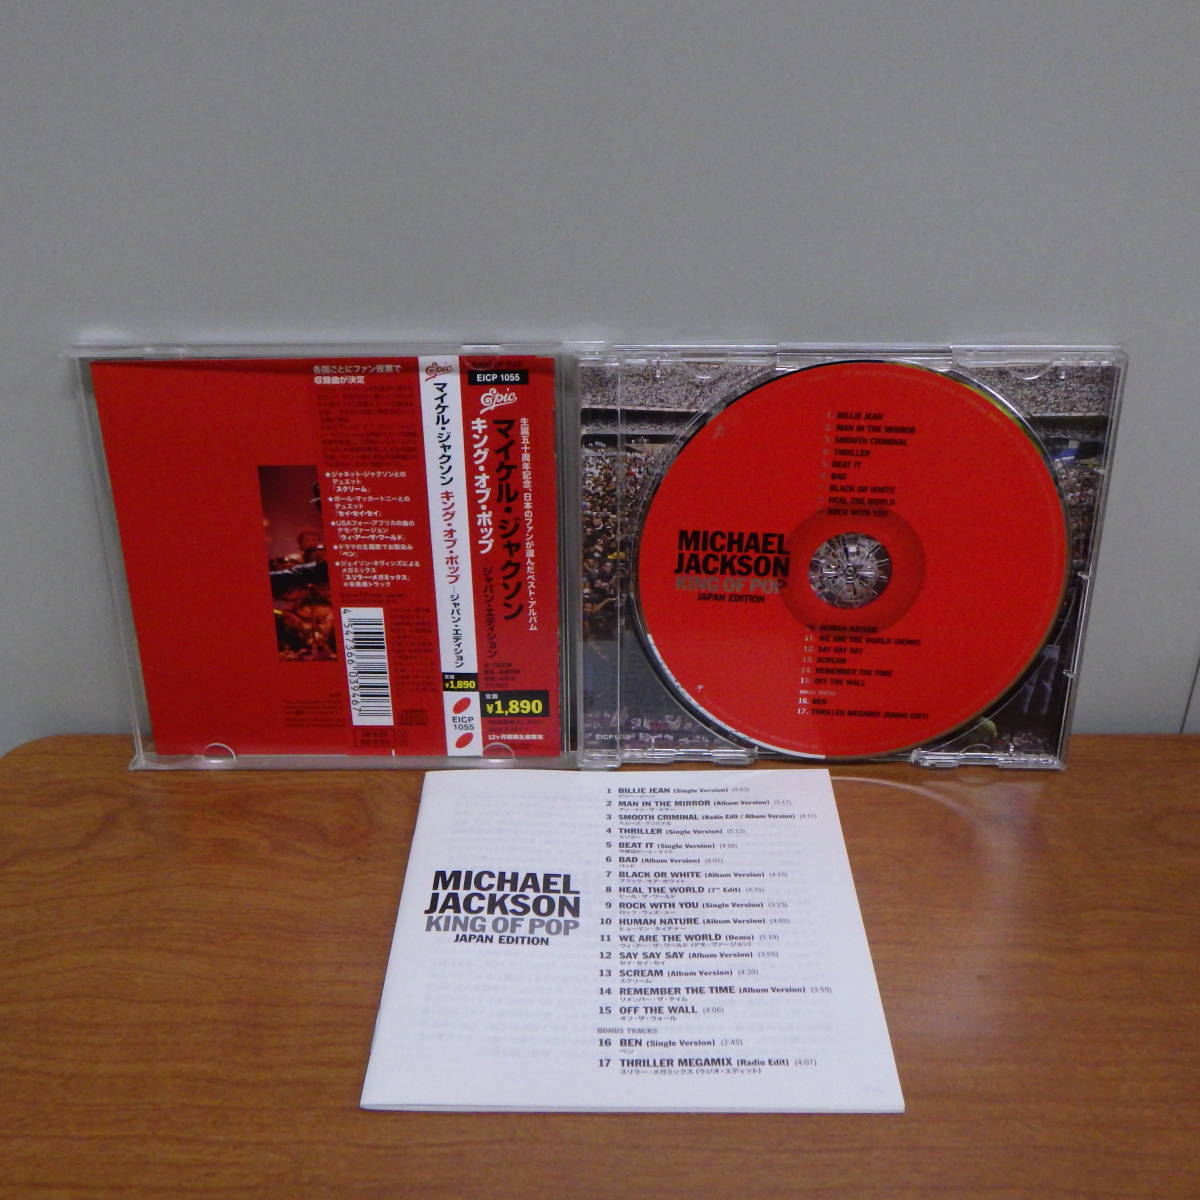 CD マイケル・ジャクソン KING OF POP JAPAN EDITION MICHAEL JACKSON EICP 1055_画像5